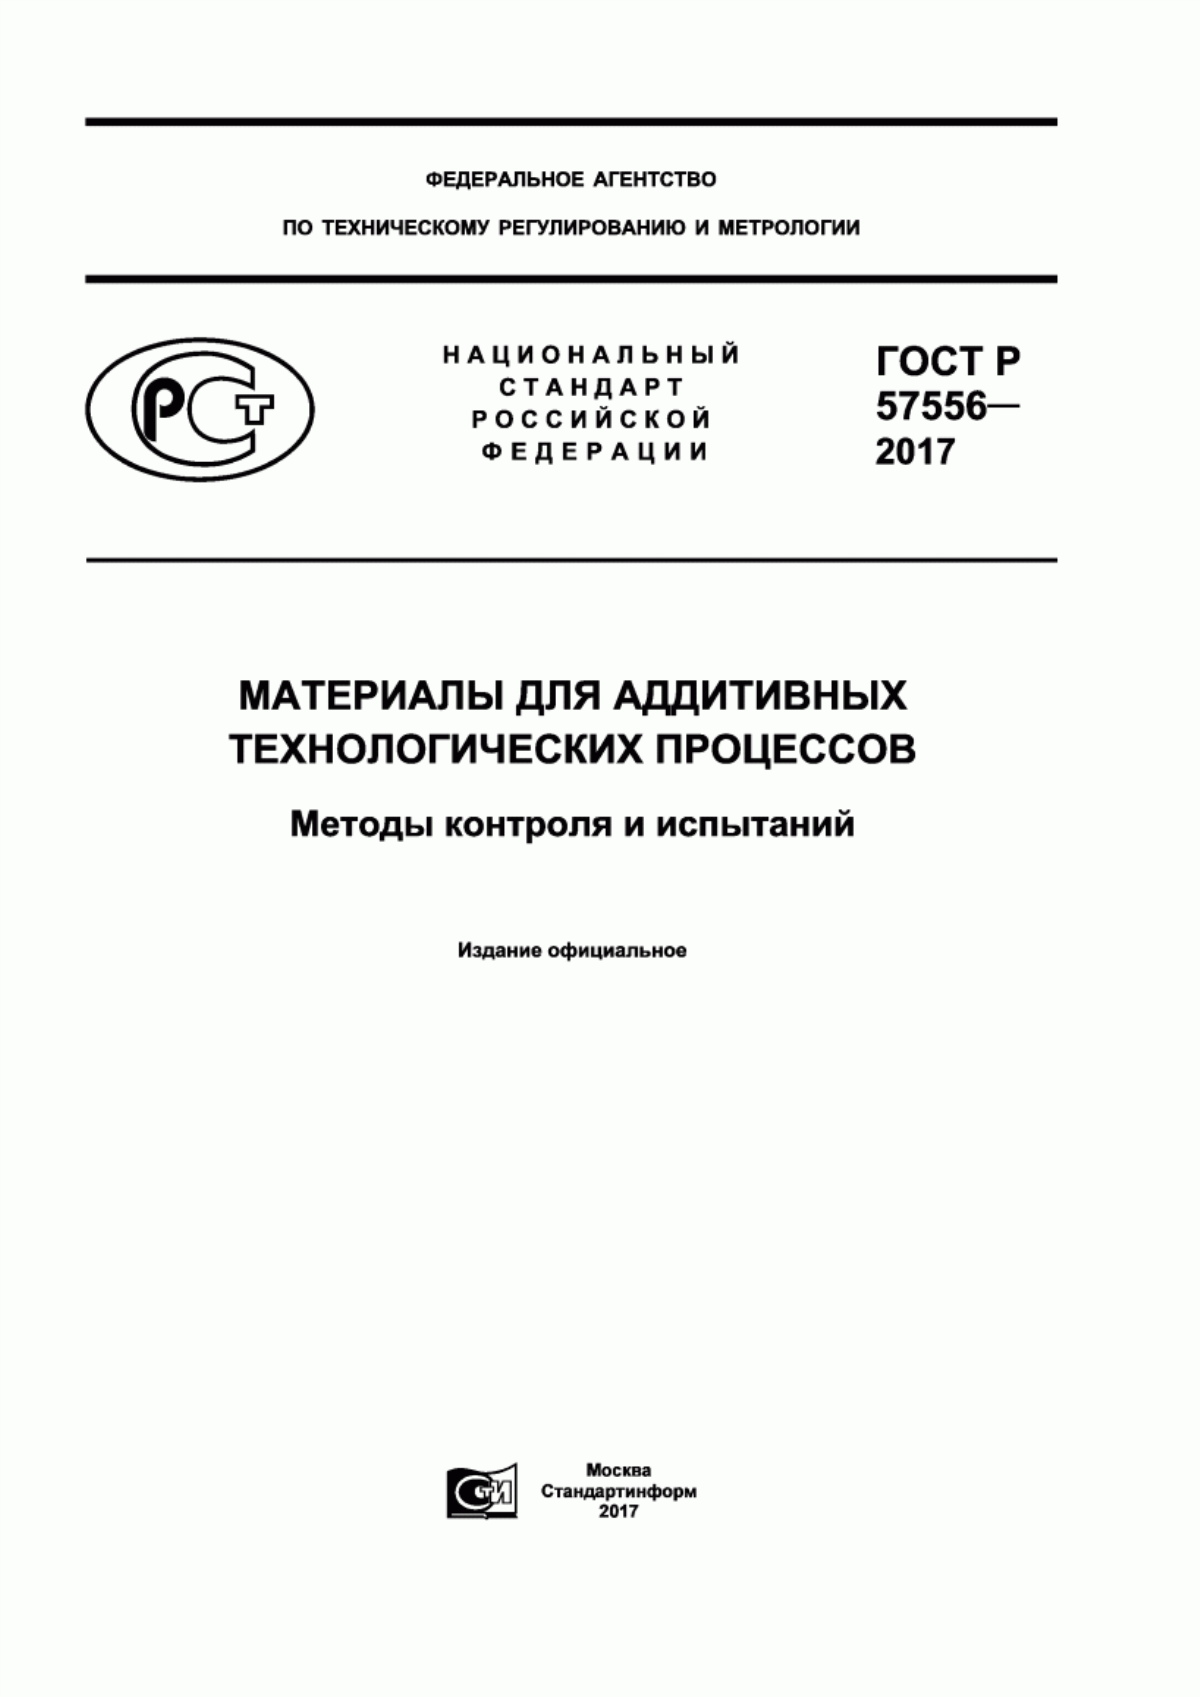 ГОСТ Р 57556-2017 Материалы для аддитивных технологических процессов. Методы контроля и испытаний